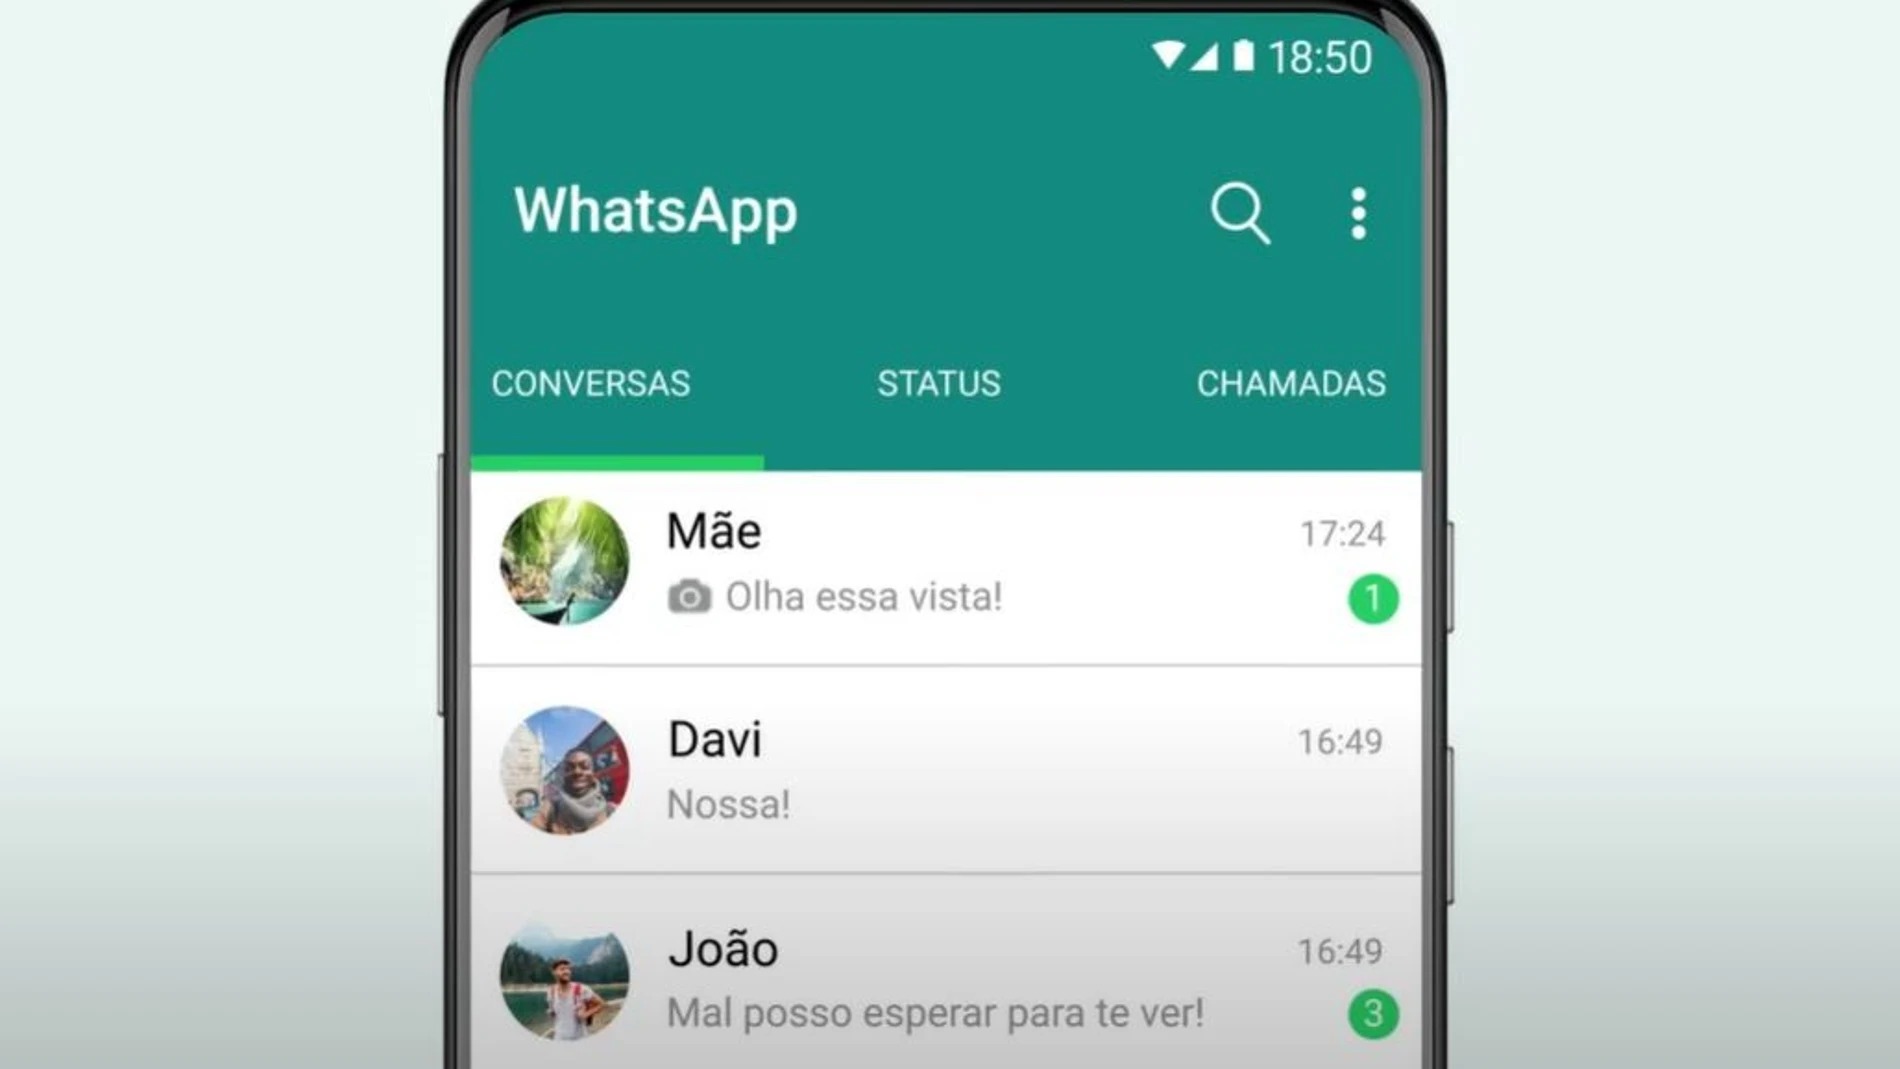 Captura de la interfaz principal de WhatsApp